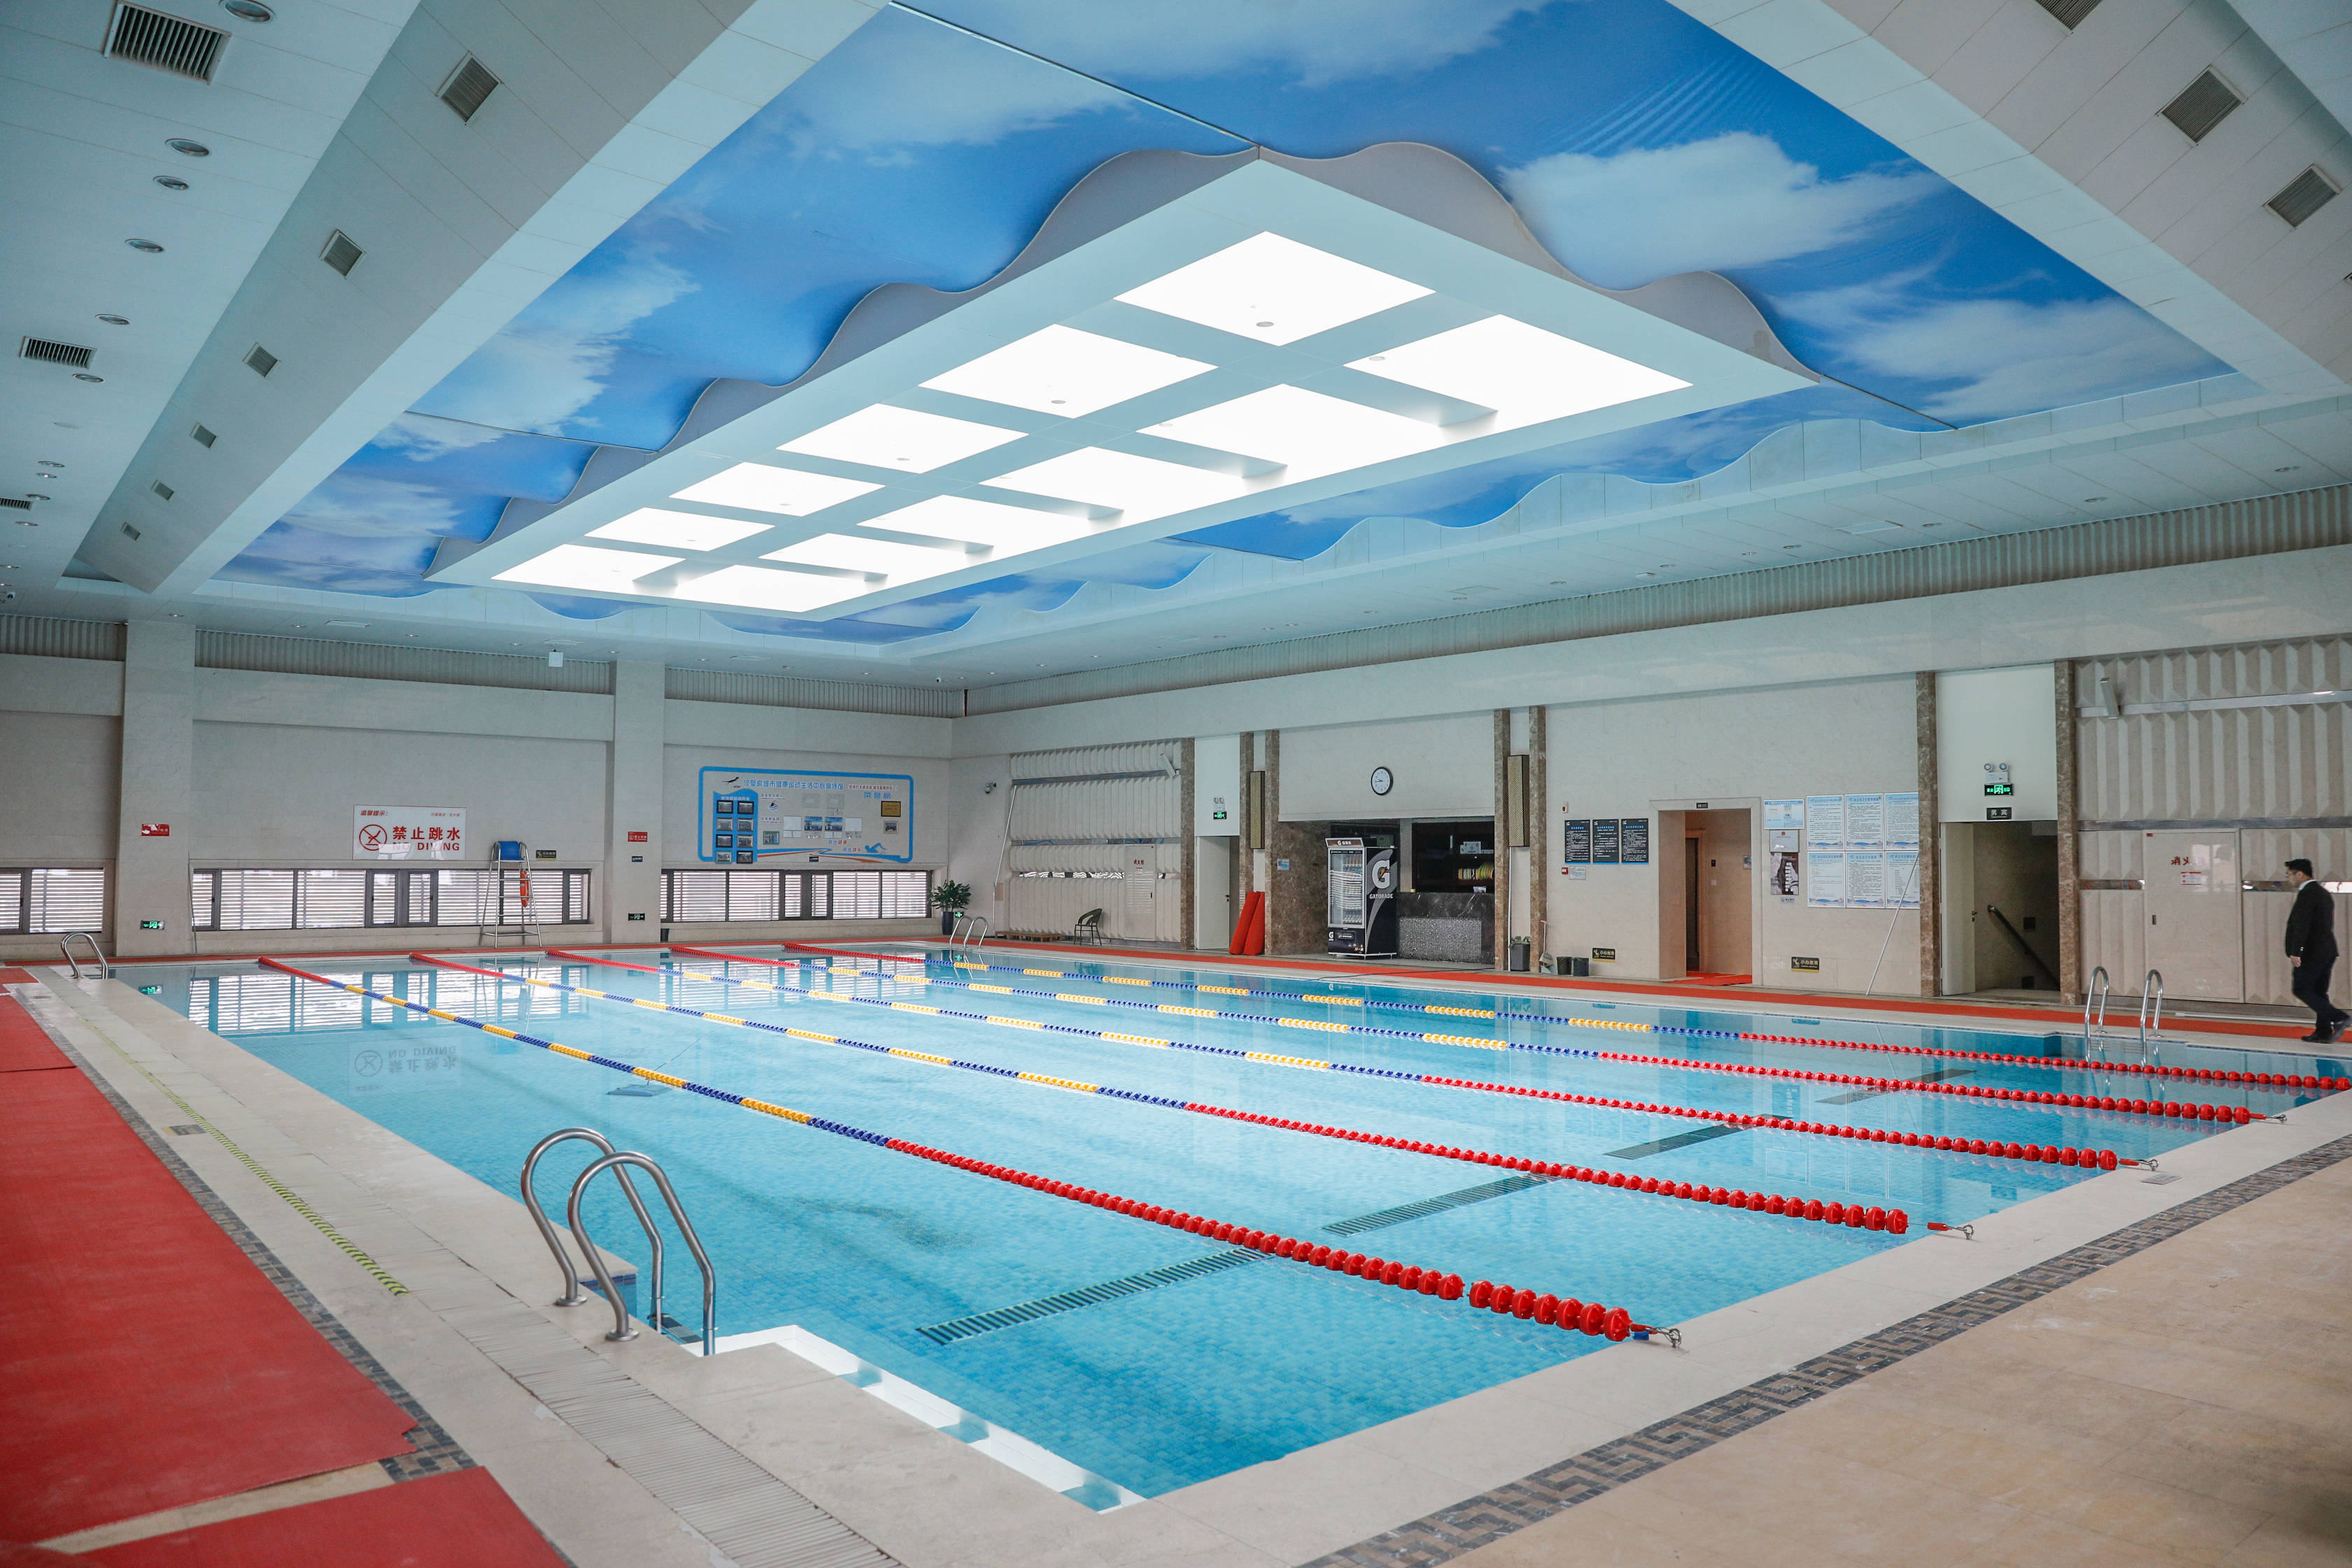 榆林石油宾馆沙壁虎游泳馆丨大人小孩游泳健身学习的好去处